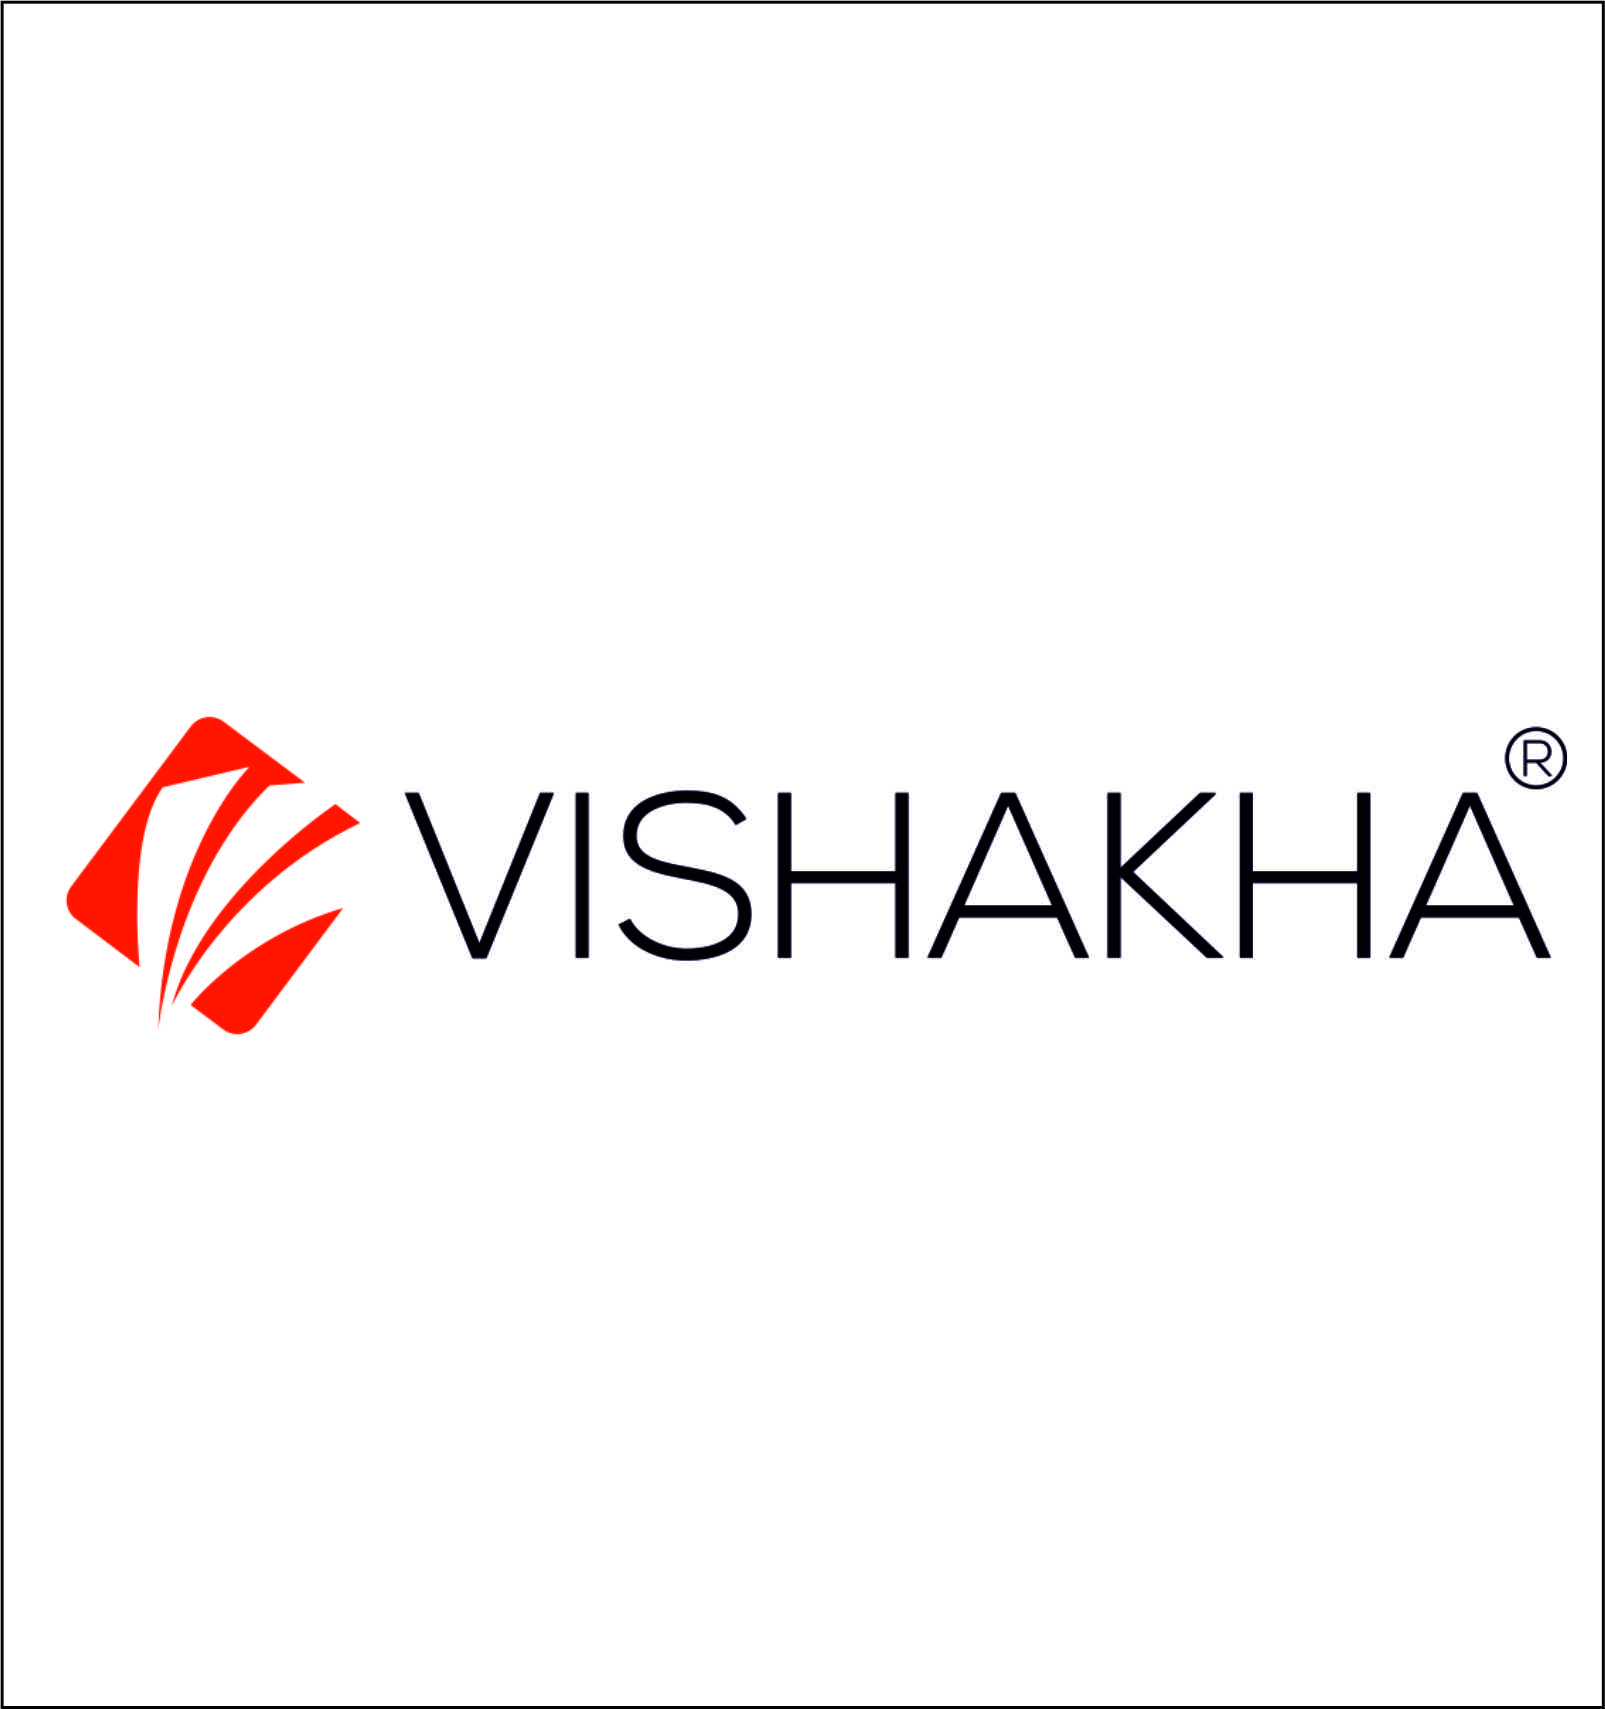 Vishakha